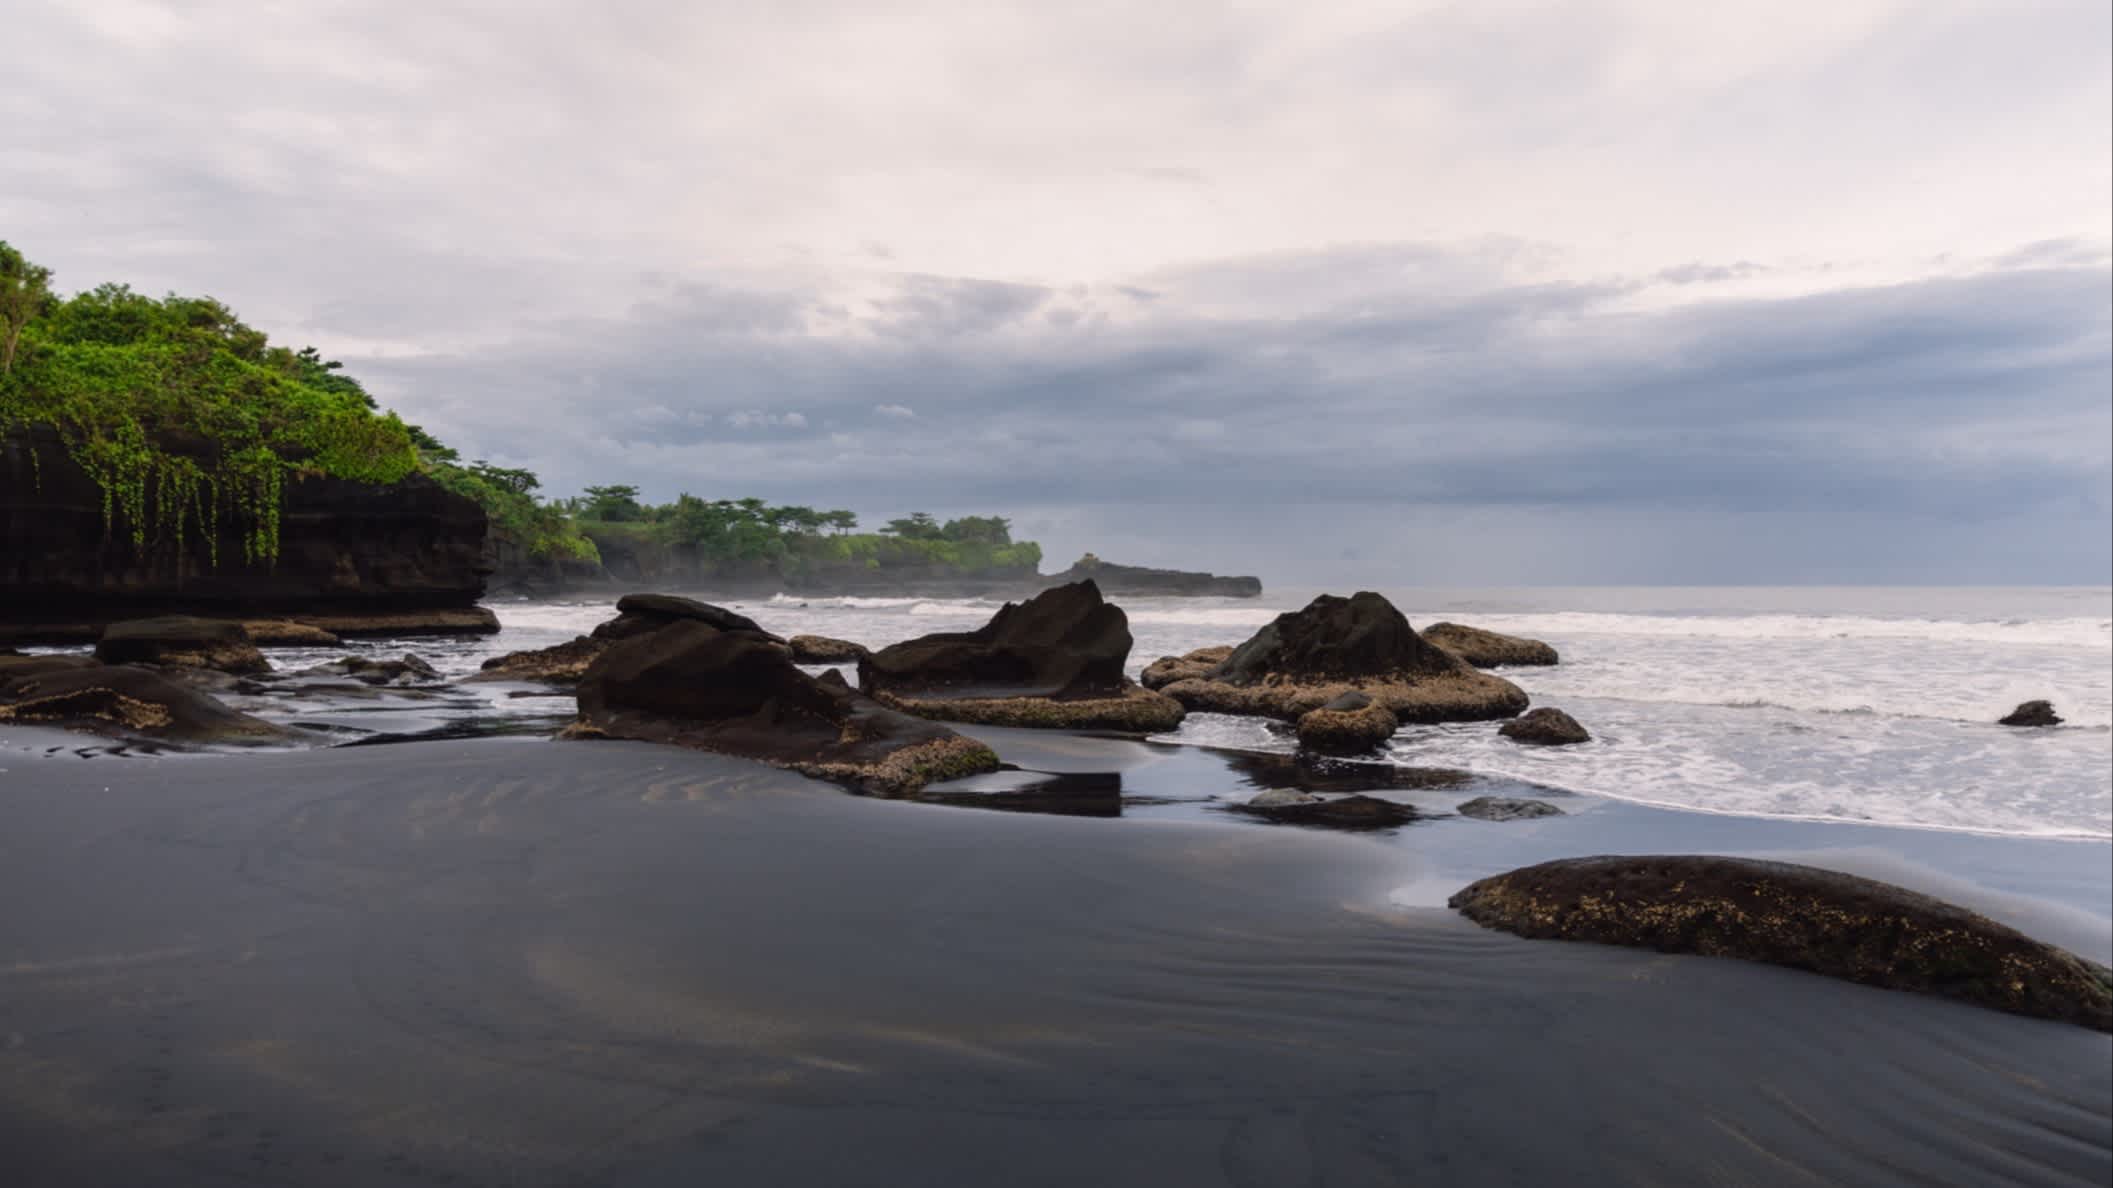 Aufnahme des vulkanischen Balian Beach auf Bali, Indonesien bei bewölktem Wetter.